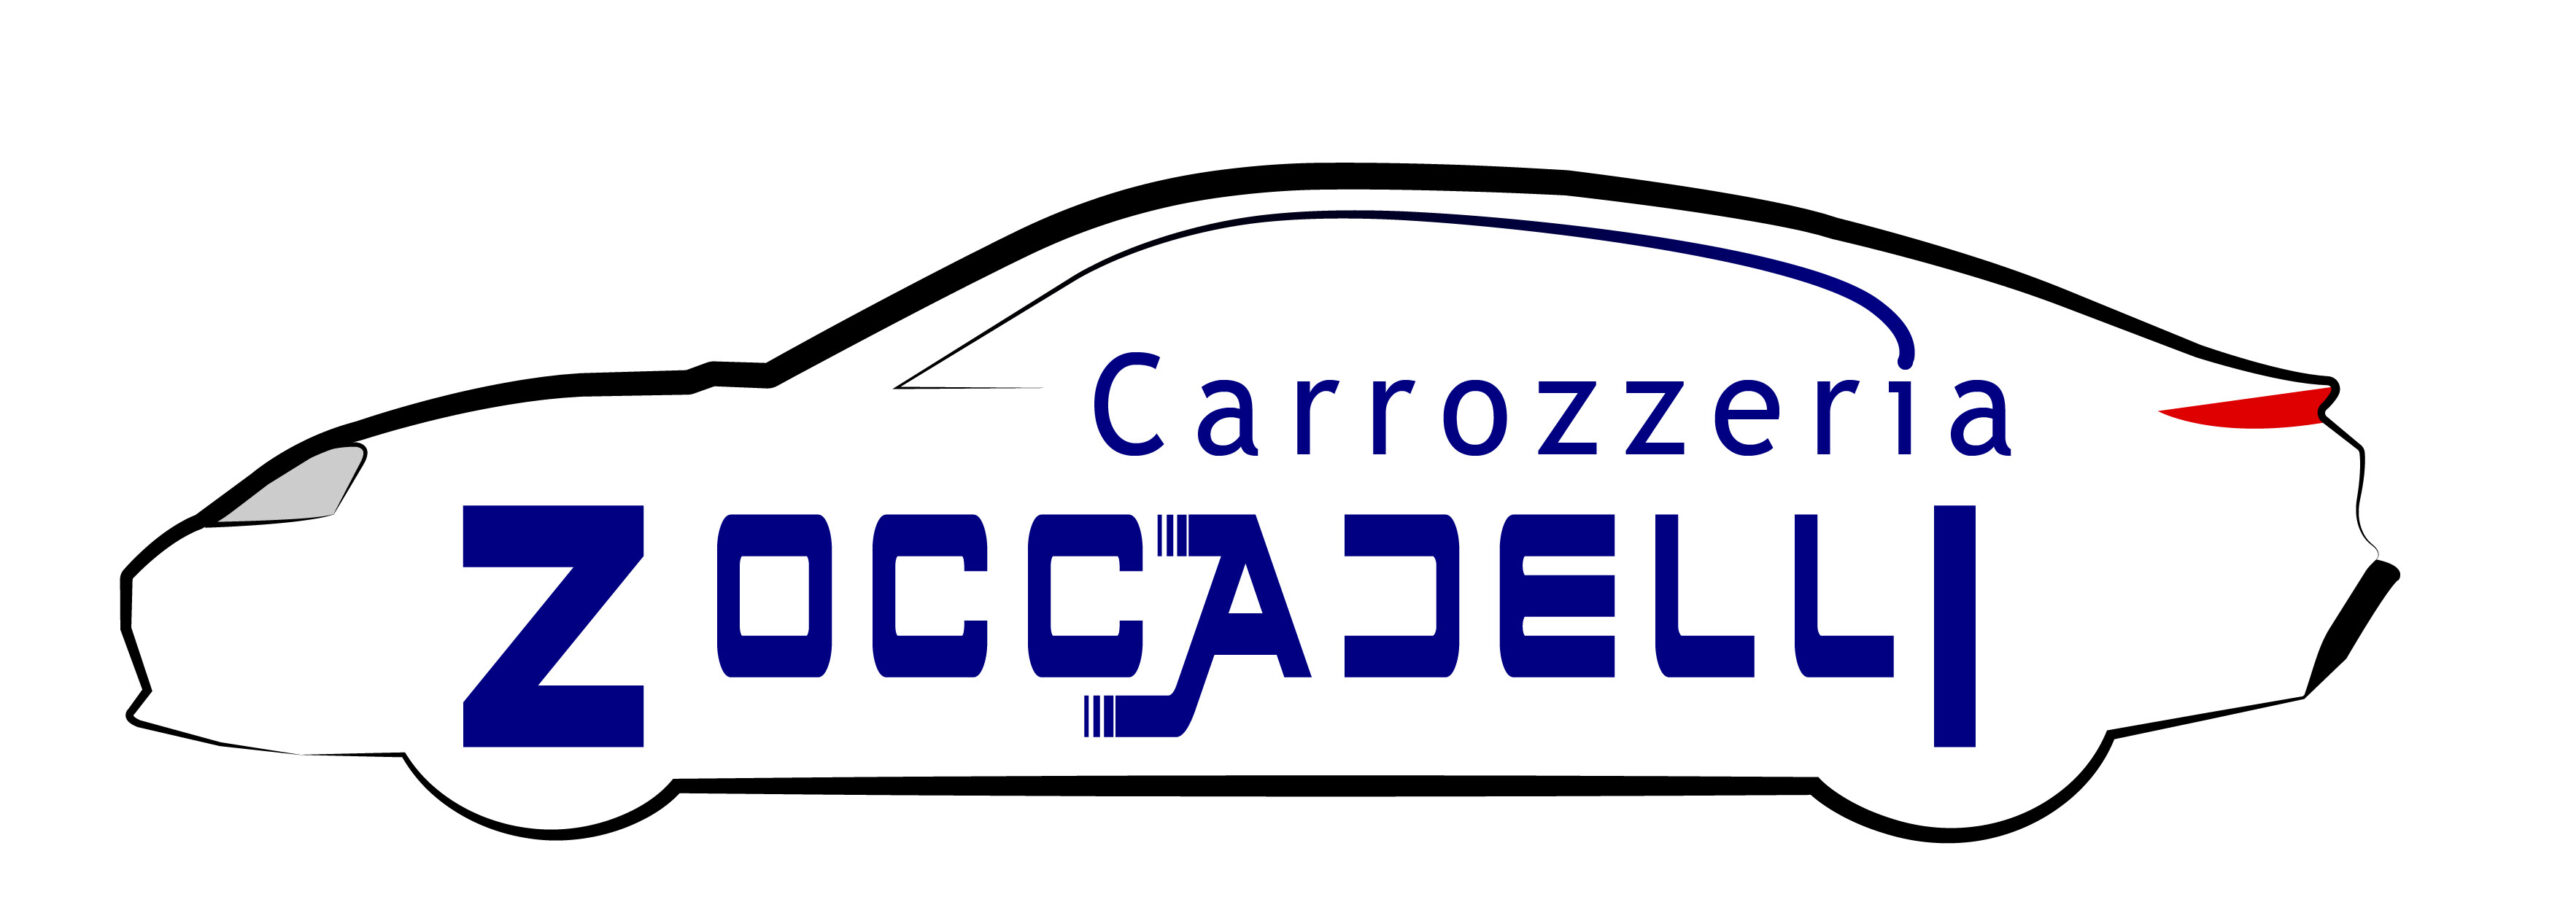 Carrozzeria Zoccadelli